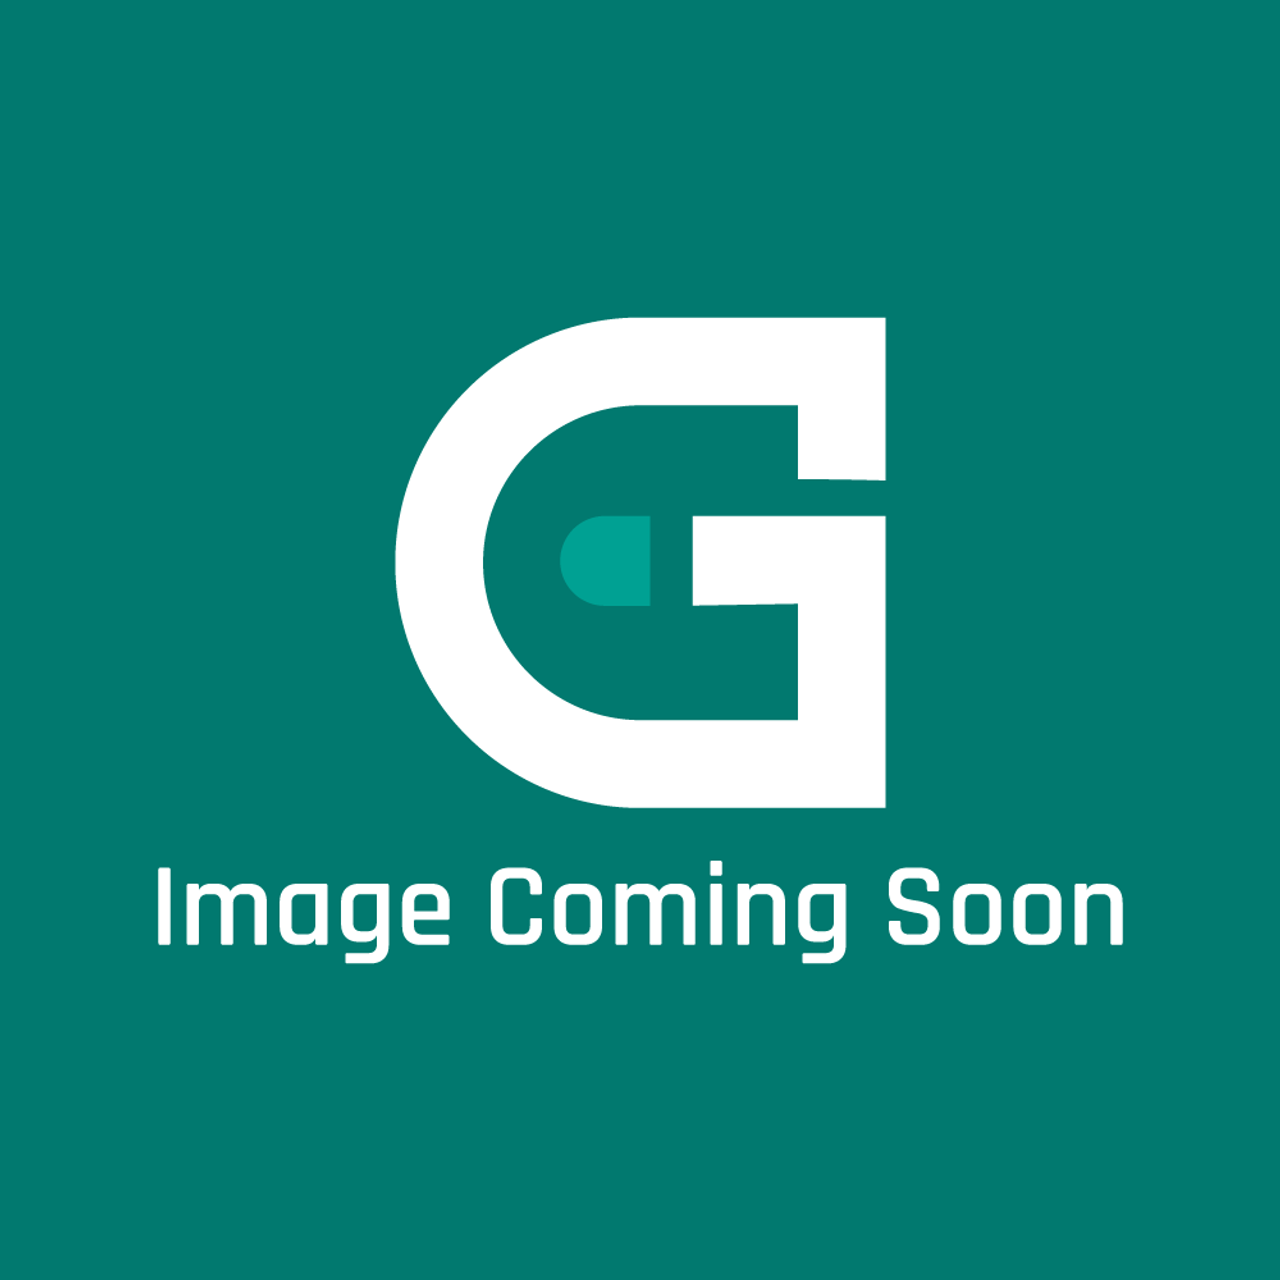 AGA Marvel RG2M313661 - Baffle-Drght Diverter 480Ag/Al - Image Coming Soon!